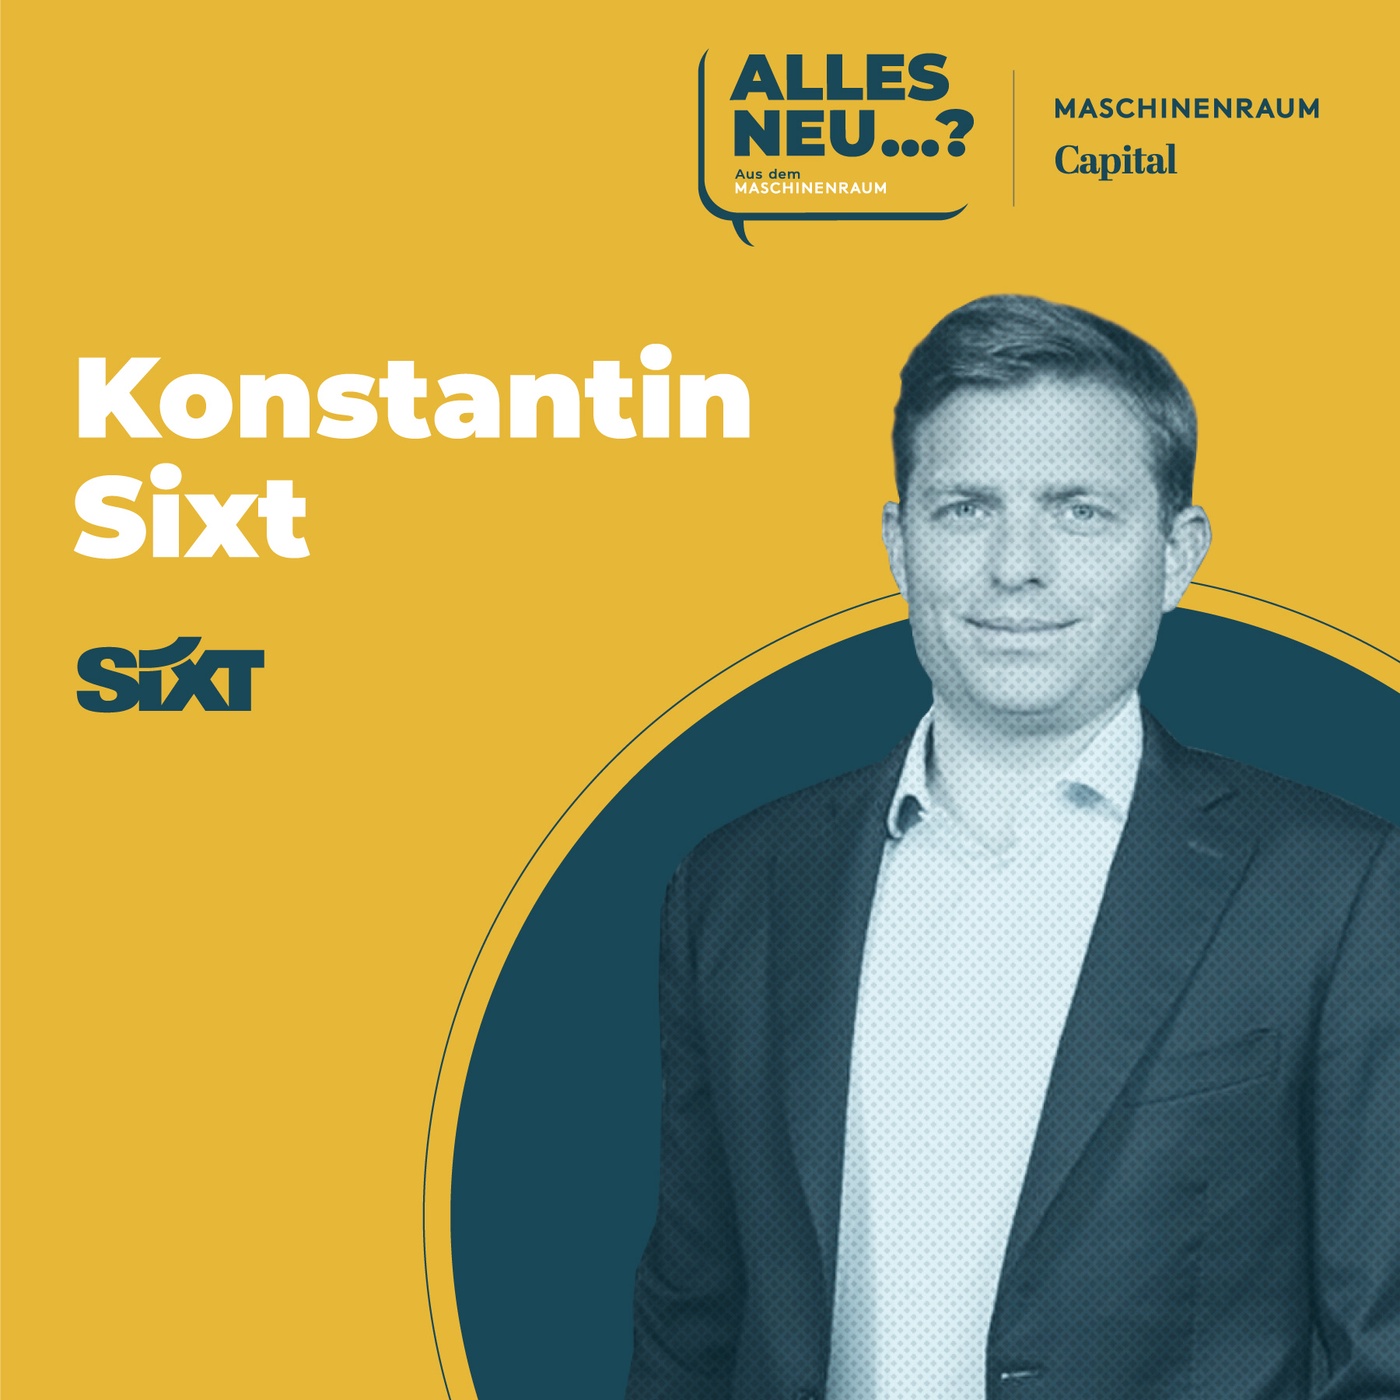 Konstantin Sixt | Sixt: „Wir wollen der größte Mobilitätsanbieter des Planeten werden